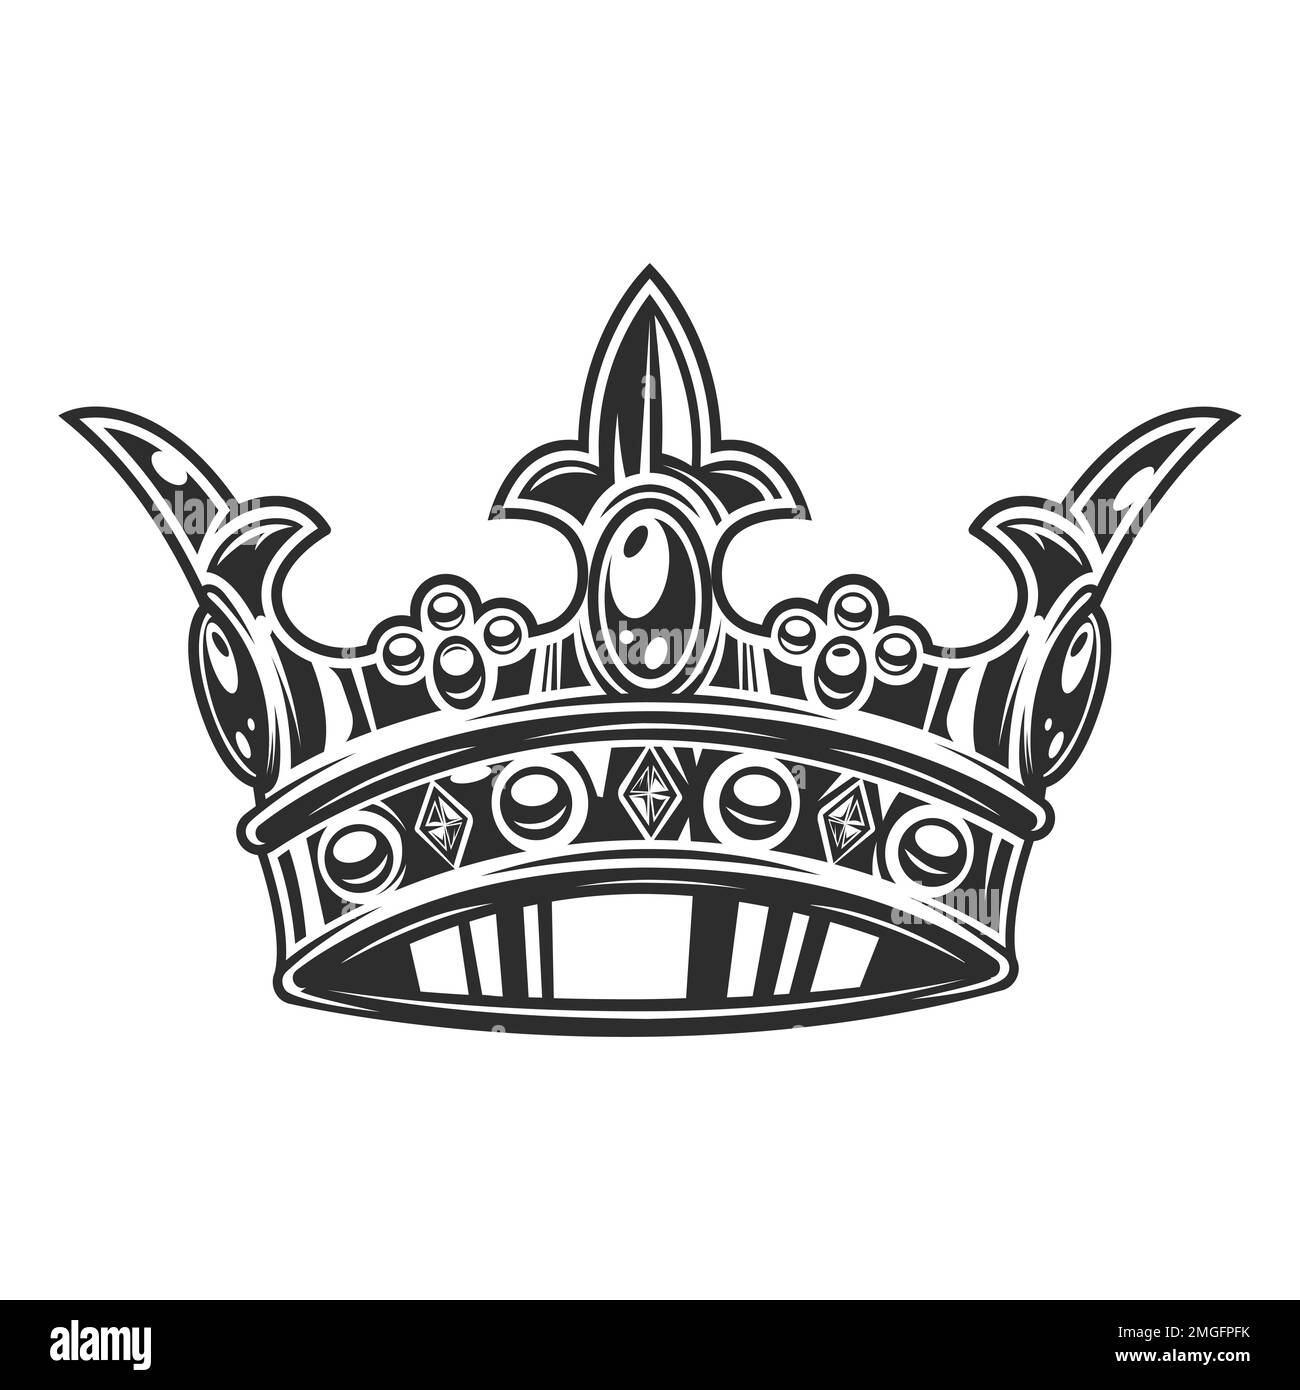 Kronendarstellung isoliert auf weißem Hintergrund. Klassische Krönung, elegante Queen- oder King-Krone gezeichnet. Königliche kaiserliche Krönungssymbole, Monarch Stockfoto